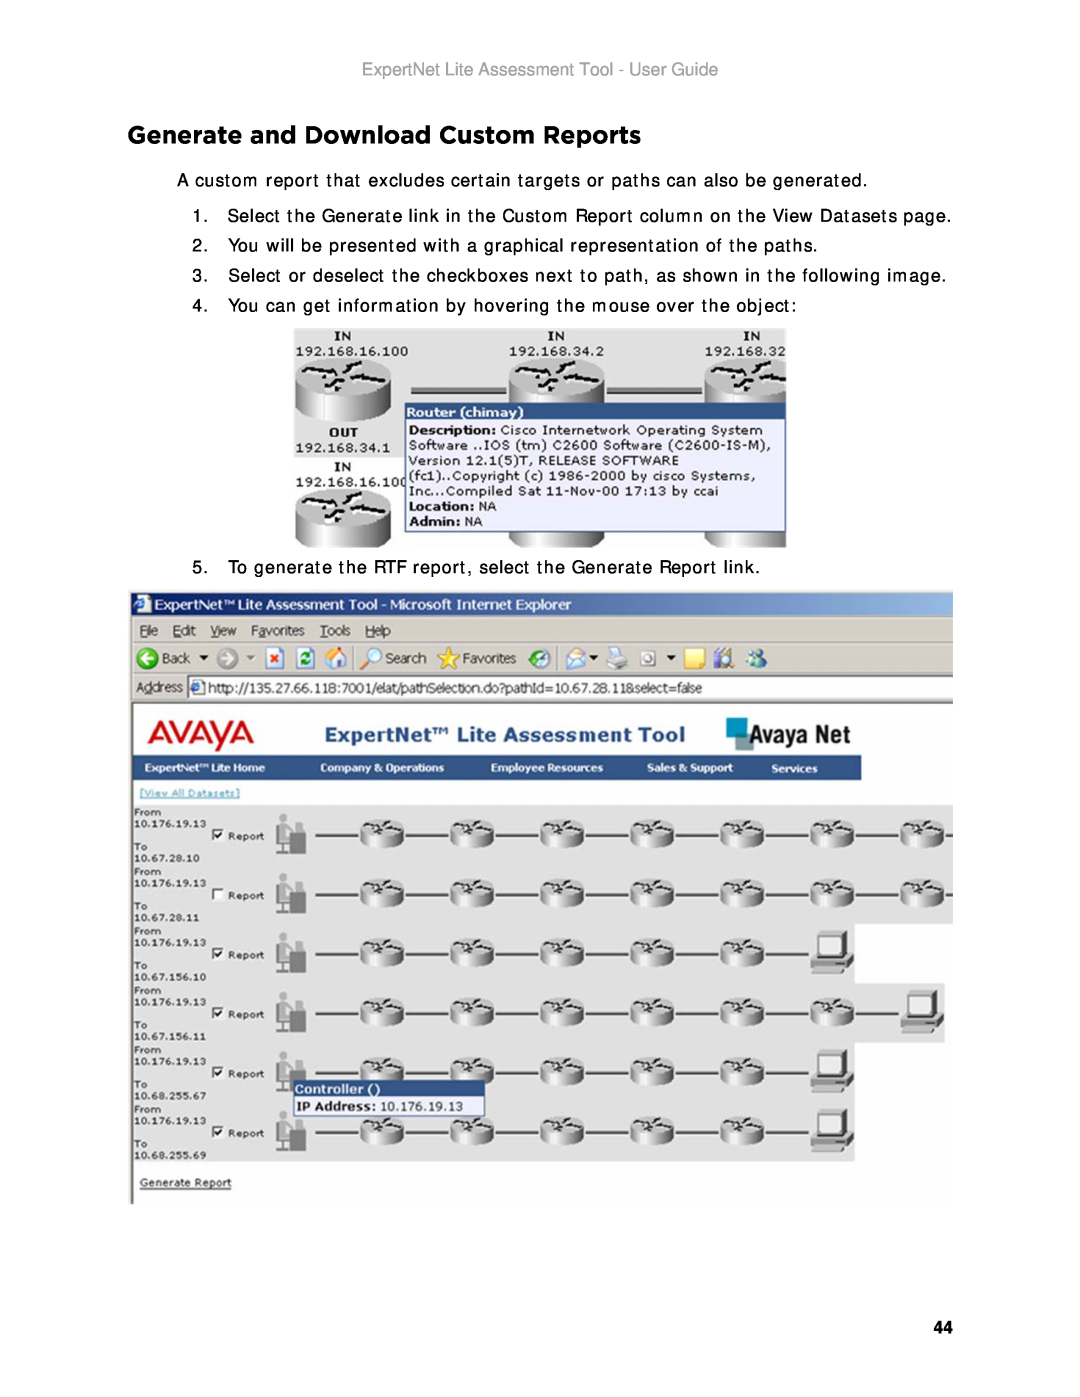 Avaya ELAT manual Generate and Download Custom Reports, ExpertNet Lite Assessment Tool - User Guide 